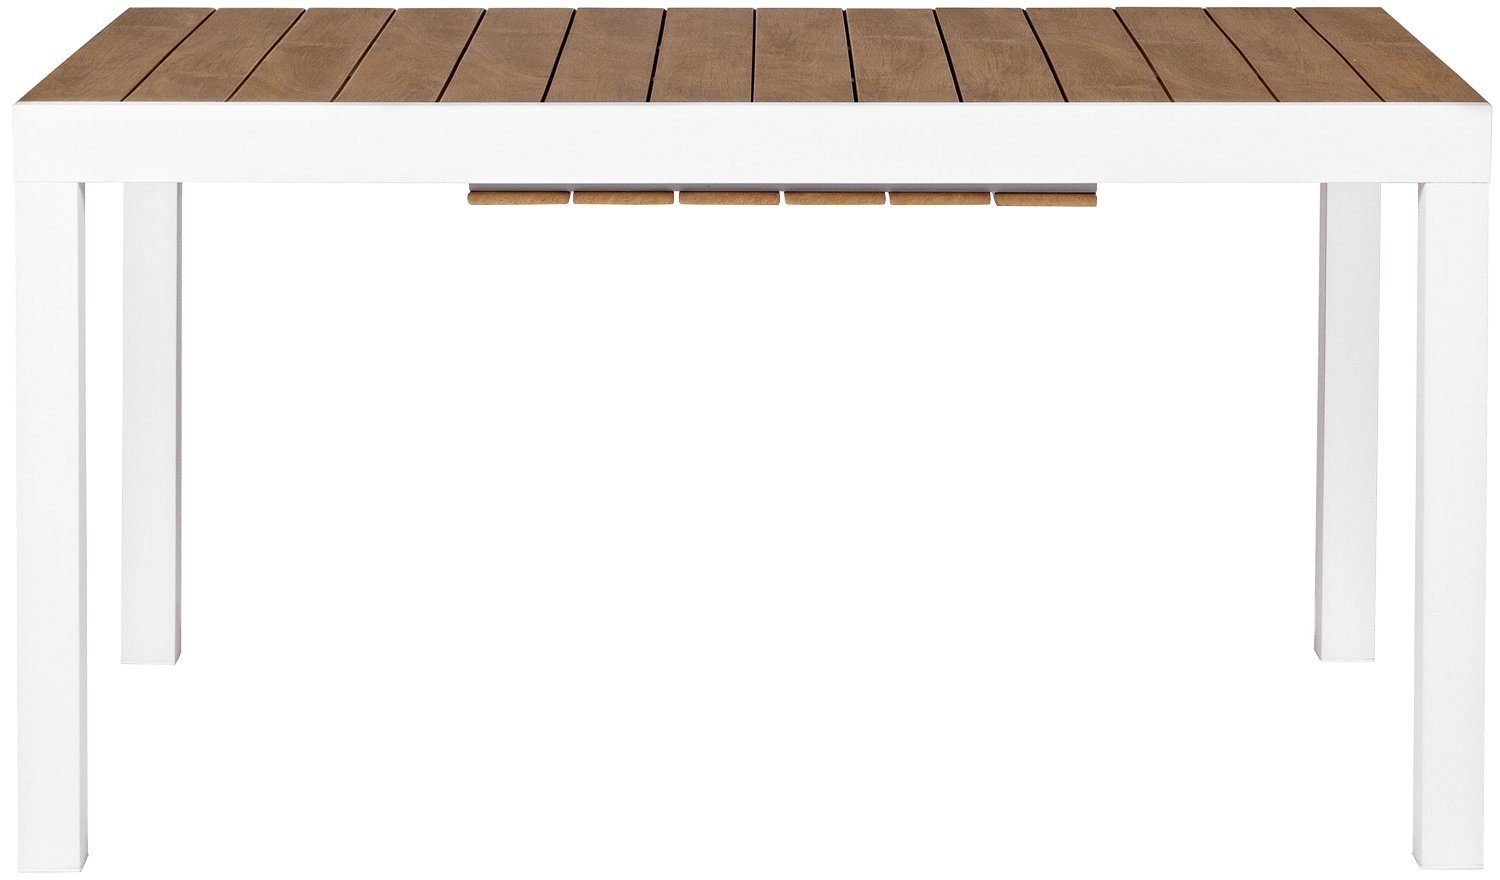 Bizzotto Gartentisch KUBIK, Ausziehbar, 140 - 200 x 90 cm, Braun, Weiß,  Aluminium, Tischplatte aus Polywood, Witterungsbeständig,  pulverbeschichtetes Aluminiumgestell in weiß